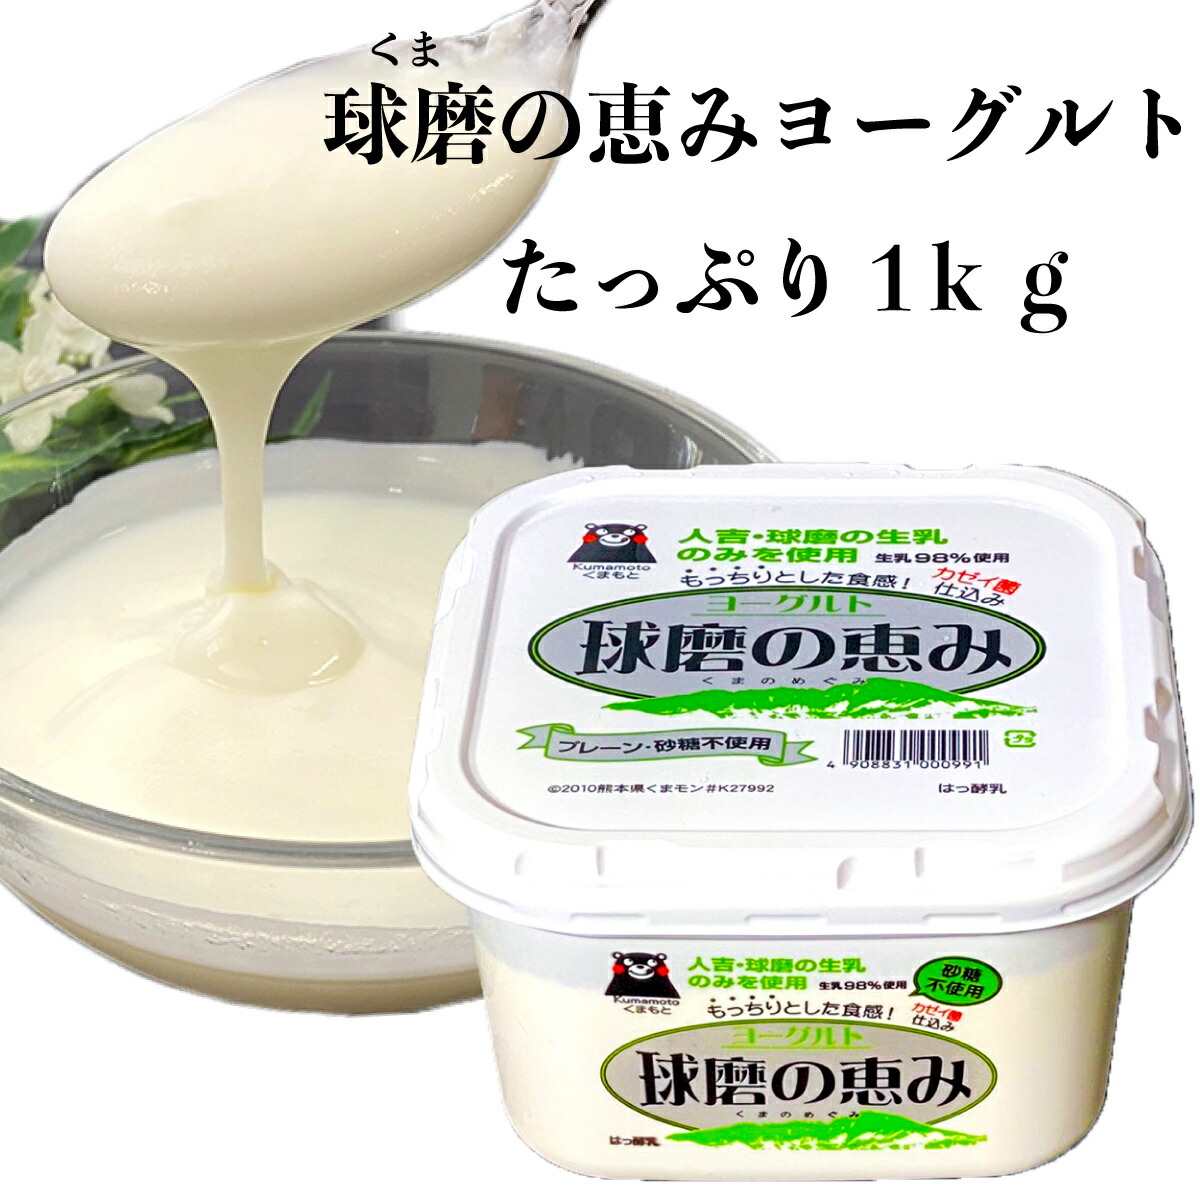  лампочка .. .. йогурт 1kg человек . лампочка .. сырой ..100% использование сделал йогурт ..kazei.......-. местного производства сырой . бесплатная доставка Kumamoto префектура производство утро .. . ваш заказ 